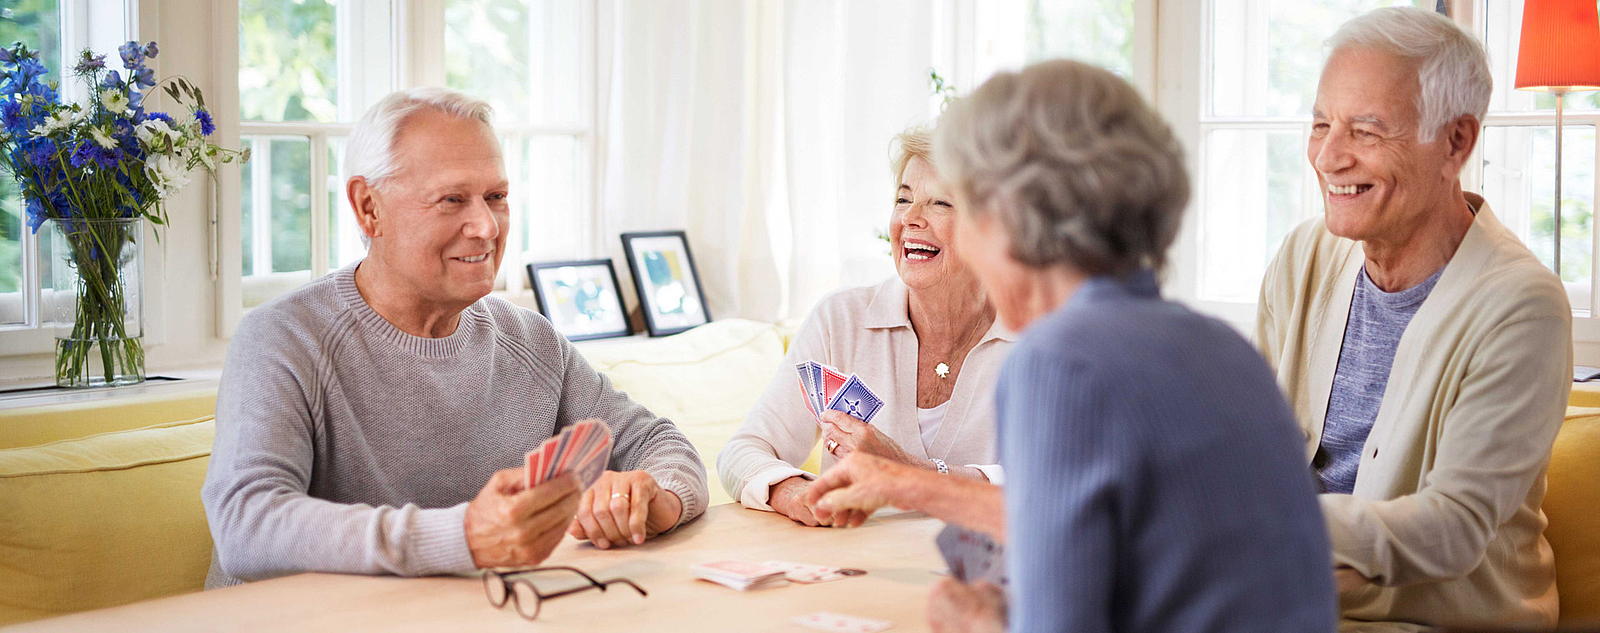 Ältere Menschen beim Kartenspielen